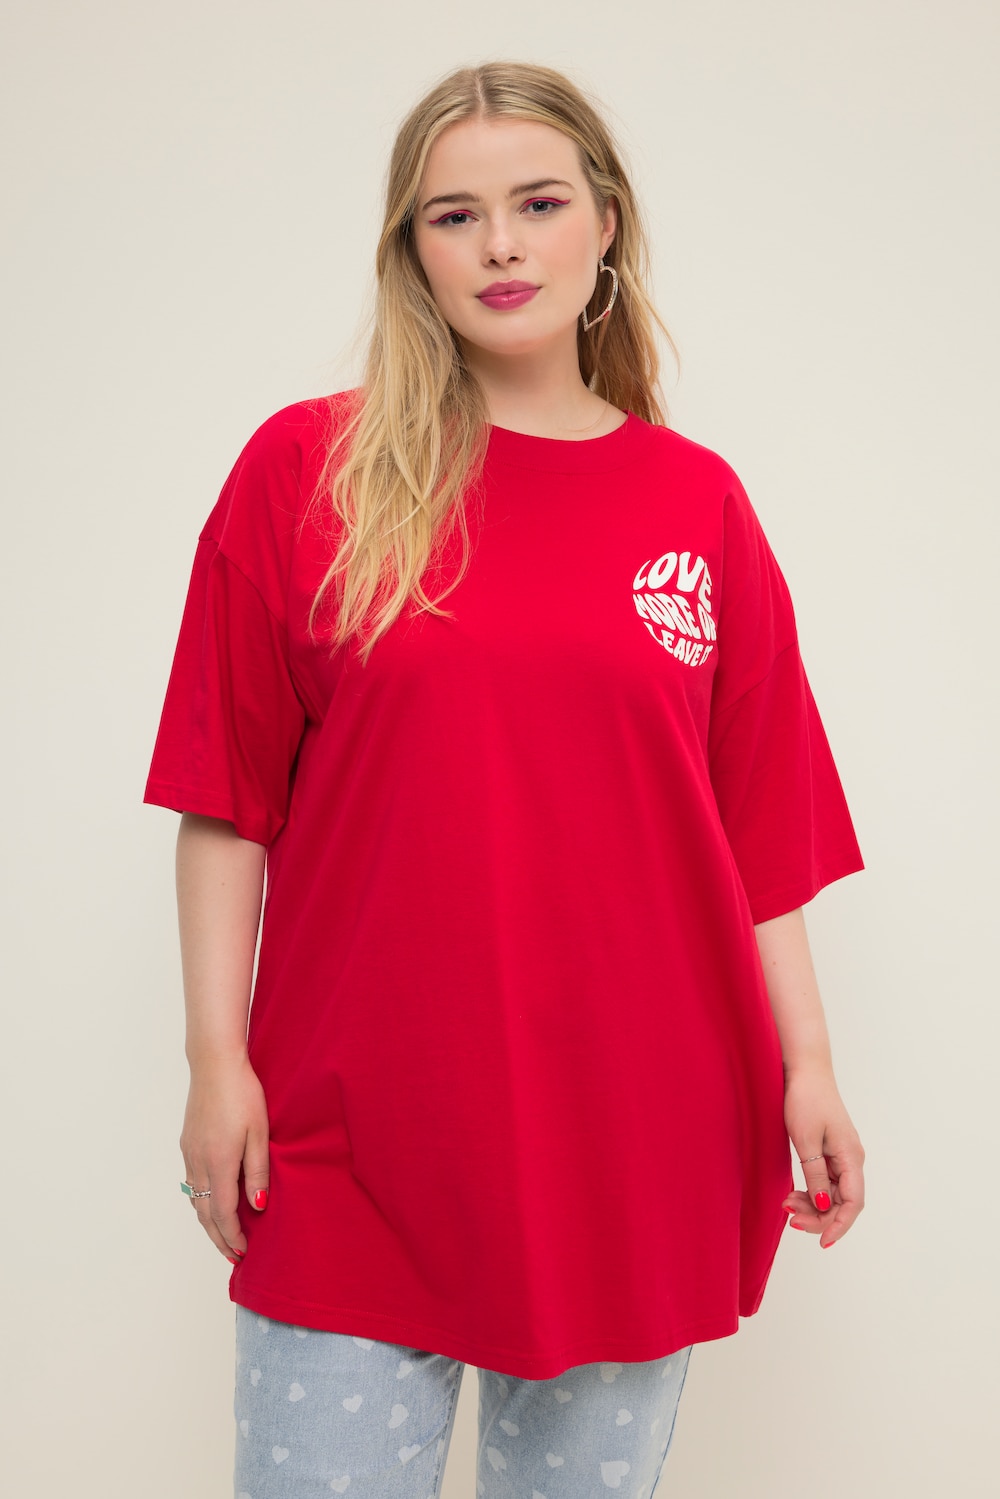 Grote Maten Oversized T-shirt, Dames, rood, Maat: 54/56, Katoen, Studio Untold